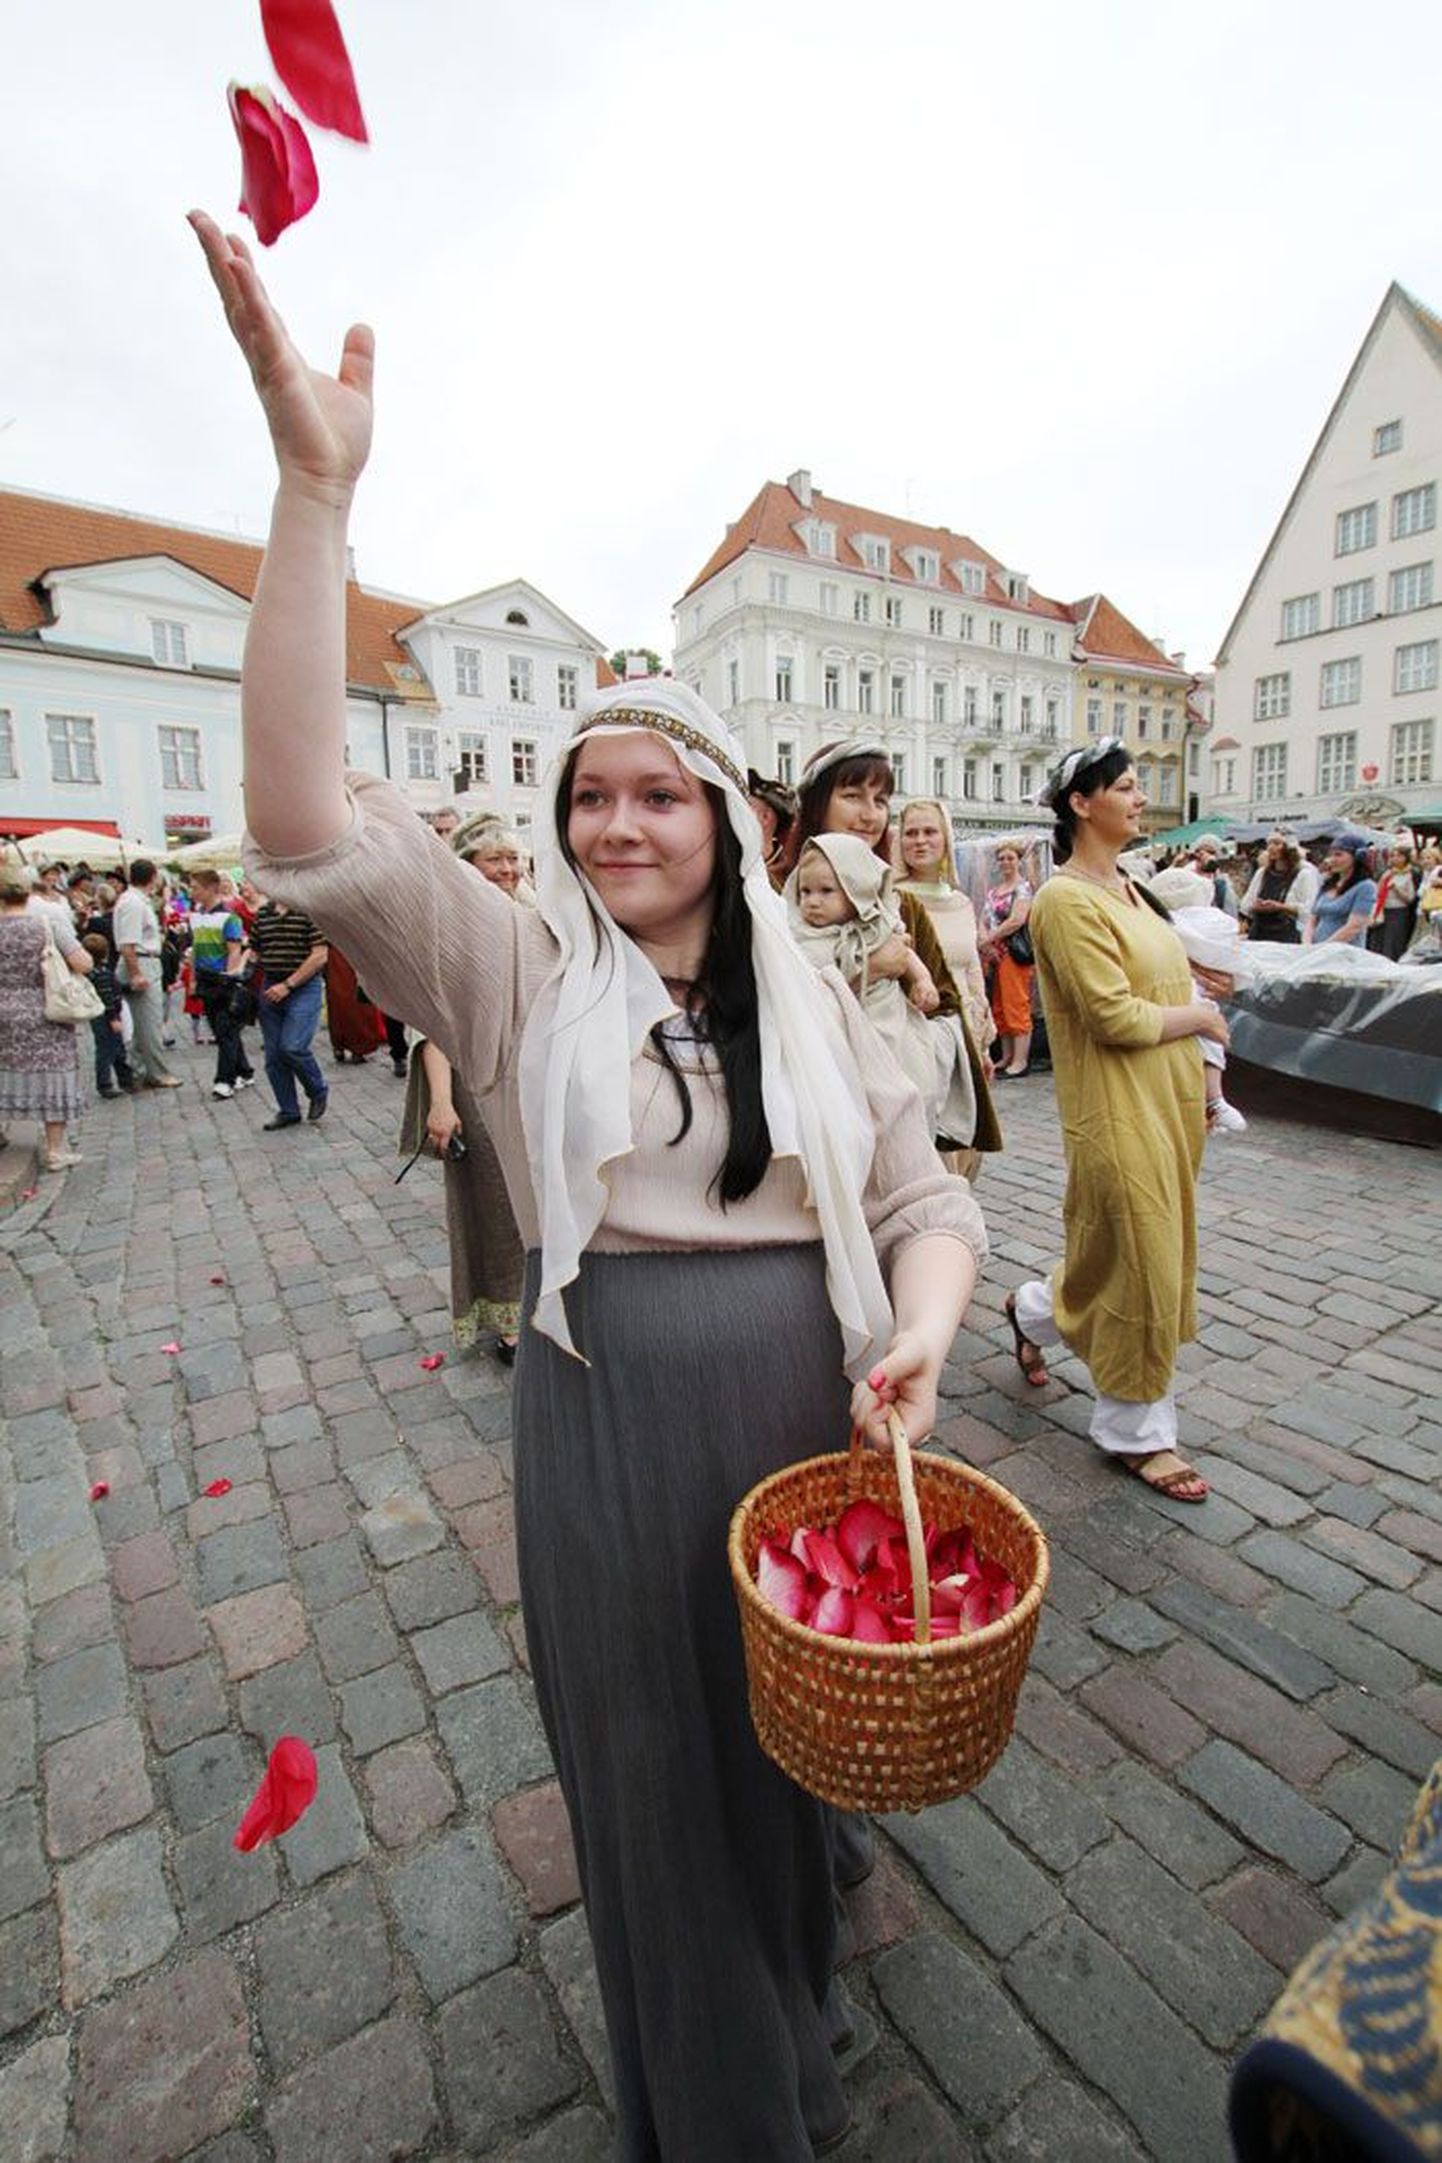 С 4 по 7 июля улицы Старого города Таллинна заполнит народ в средневековых костюмах, и каждый желающий сможет попробовать свои силы в старинных ремеслах и состязаниях.